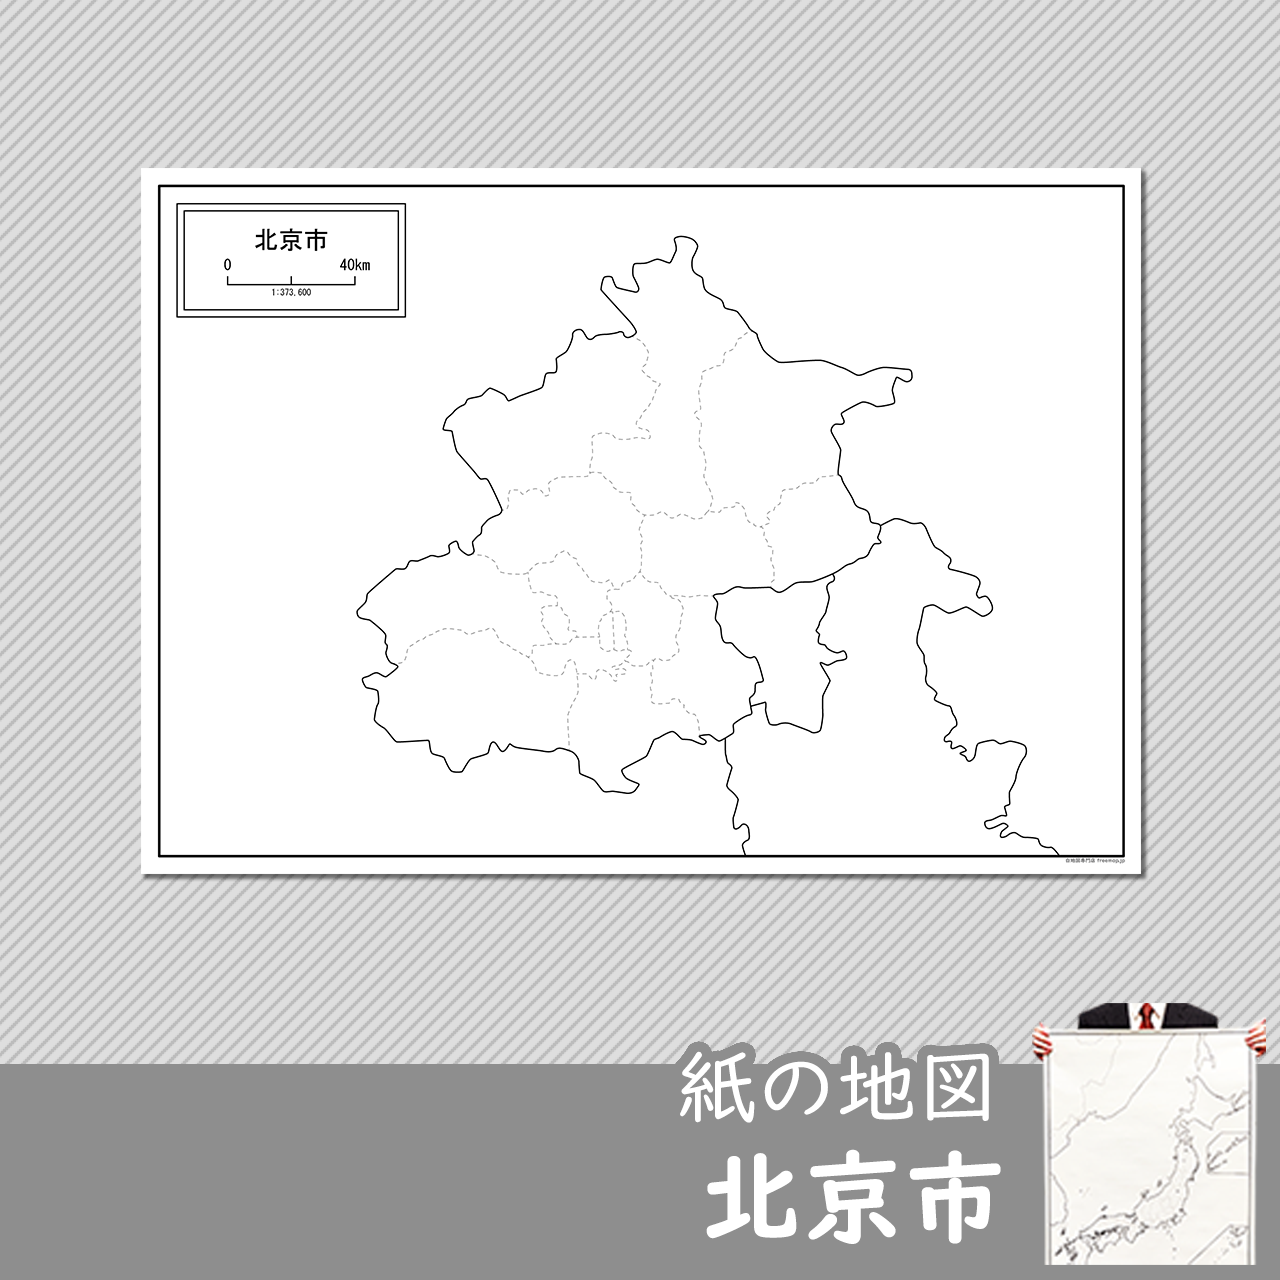 北京市（ぺきんし）の紙の白地図のサムネイル